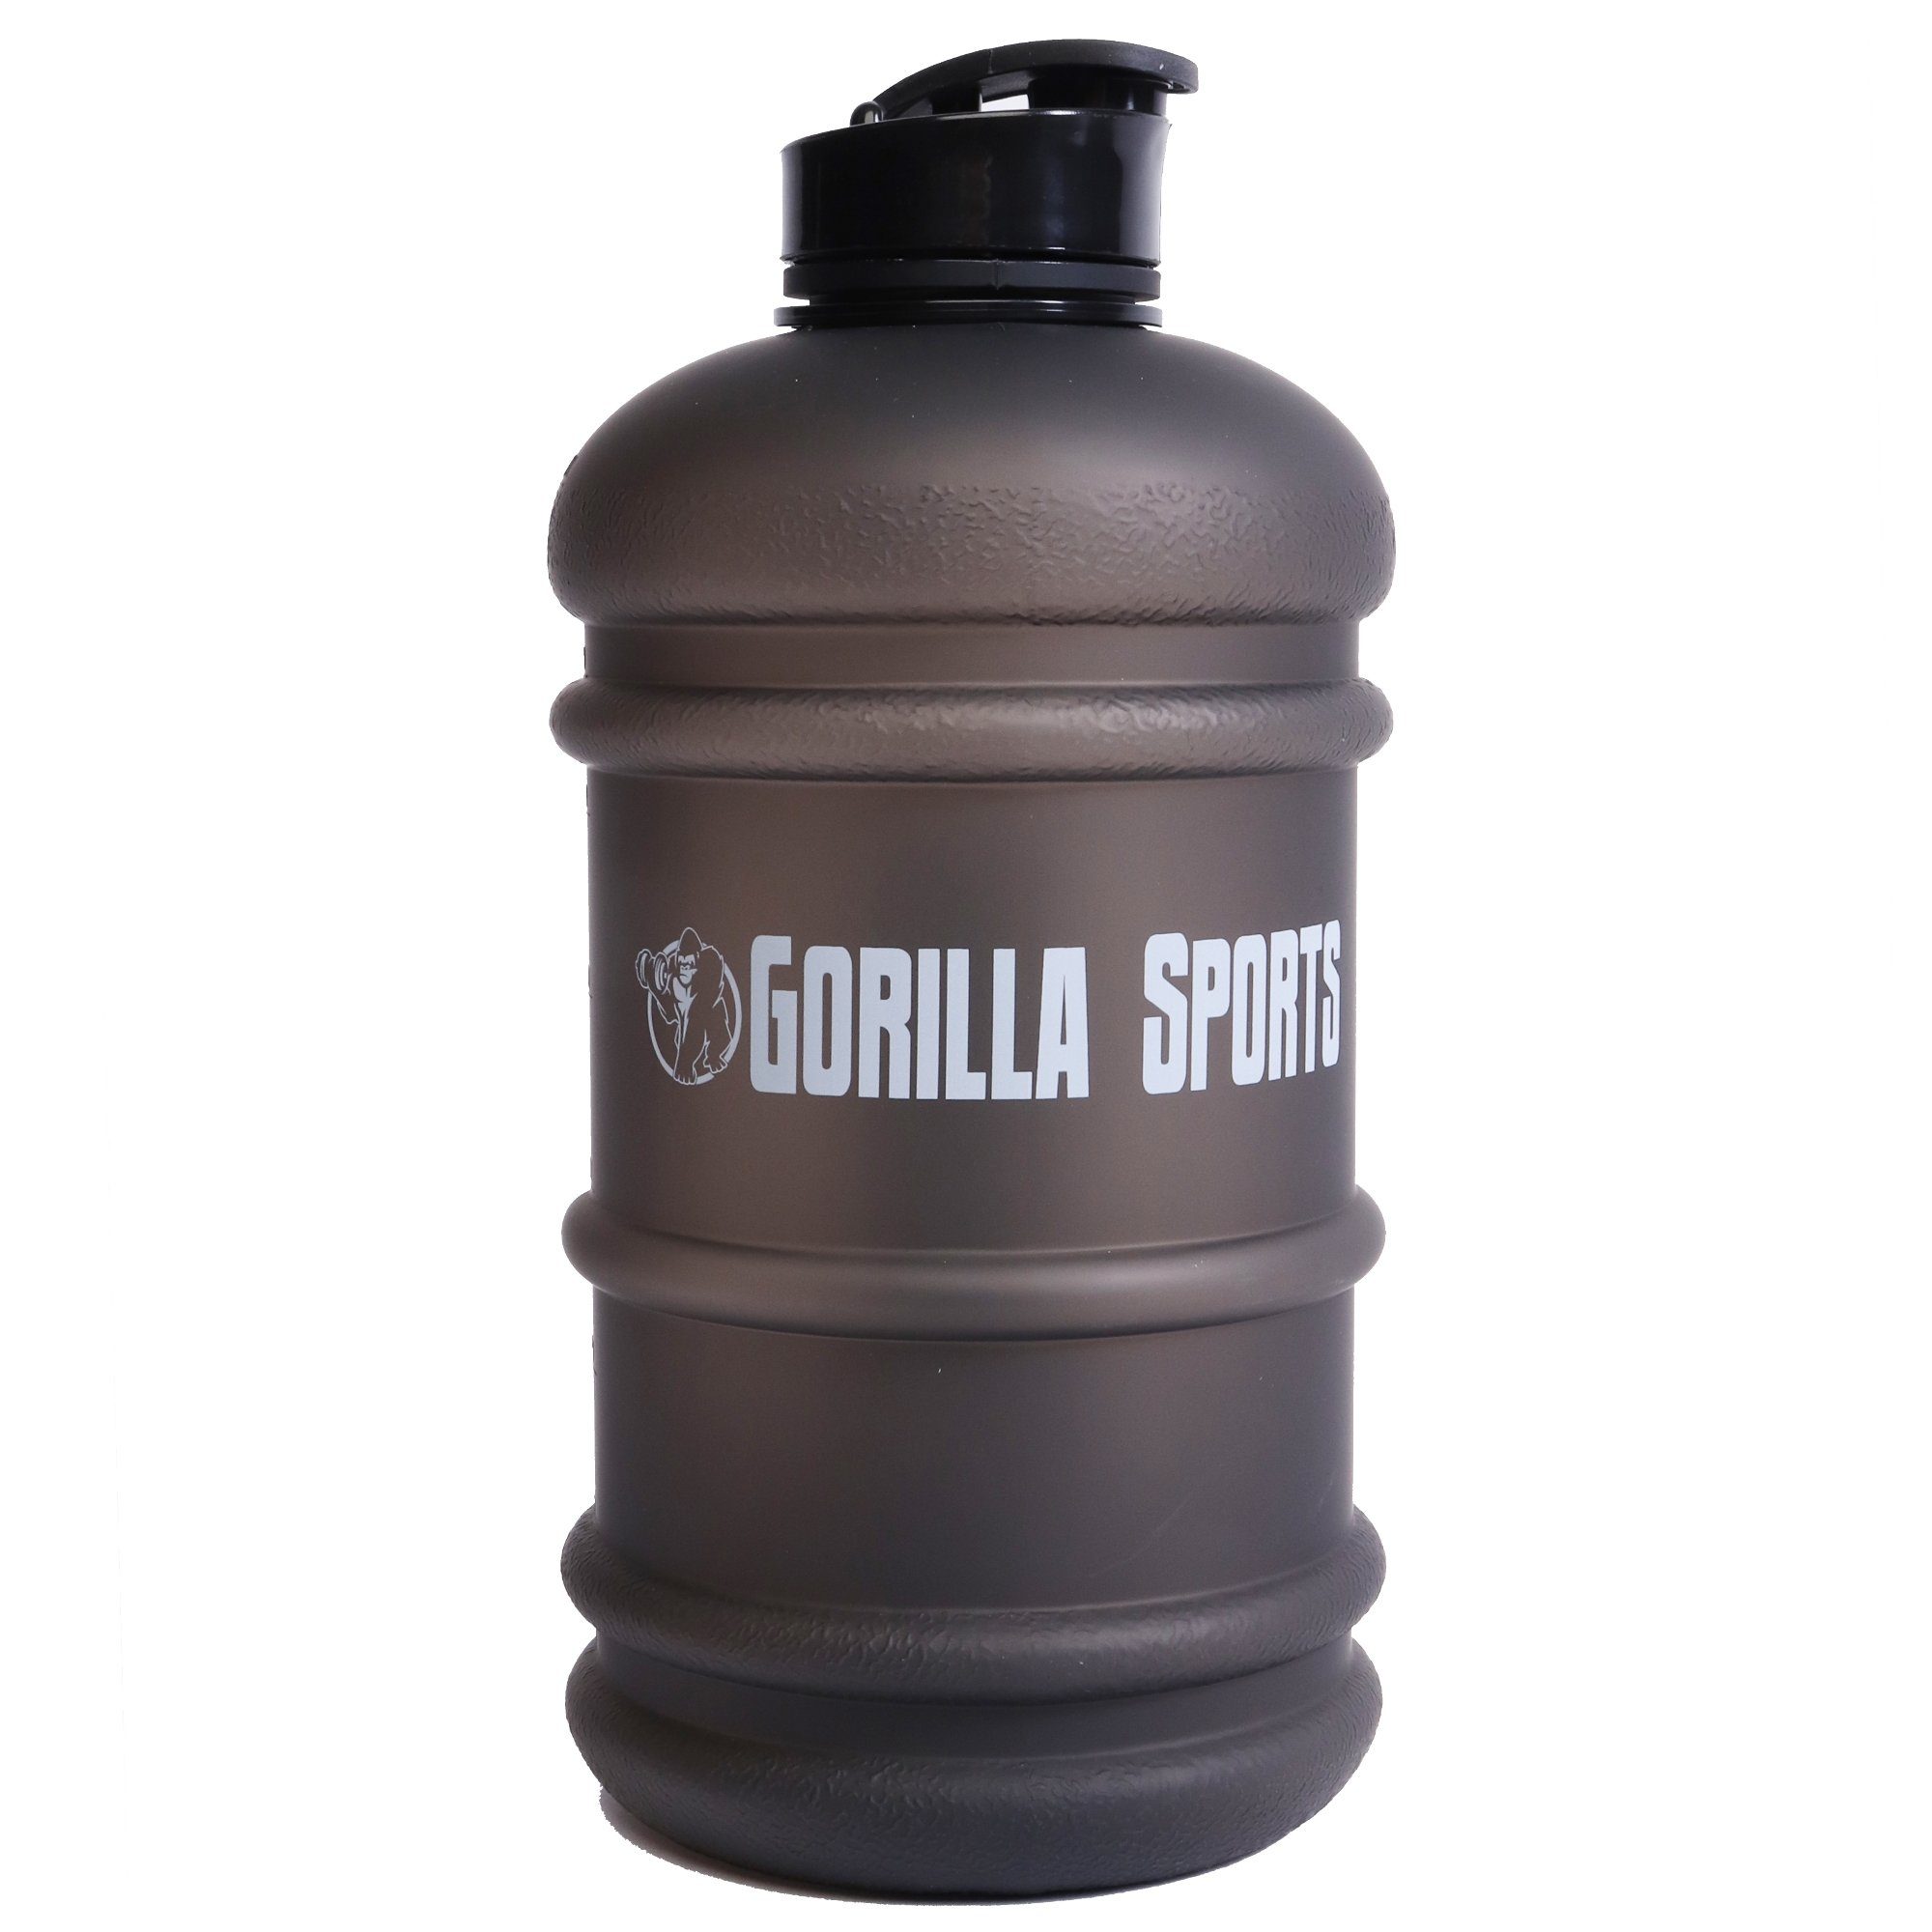 GORILLA SPORTS Trinkflasche Gallone, 2,2 Liter, BPA-Frei, Auslaufsichere, mit Griff, Sportflasche